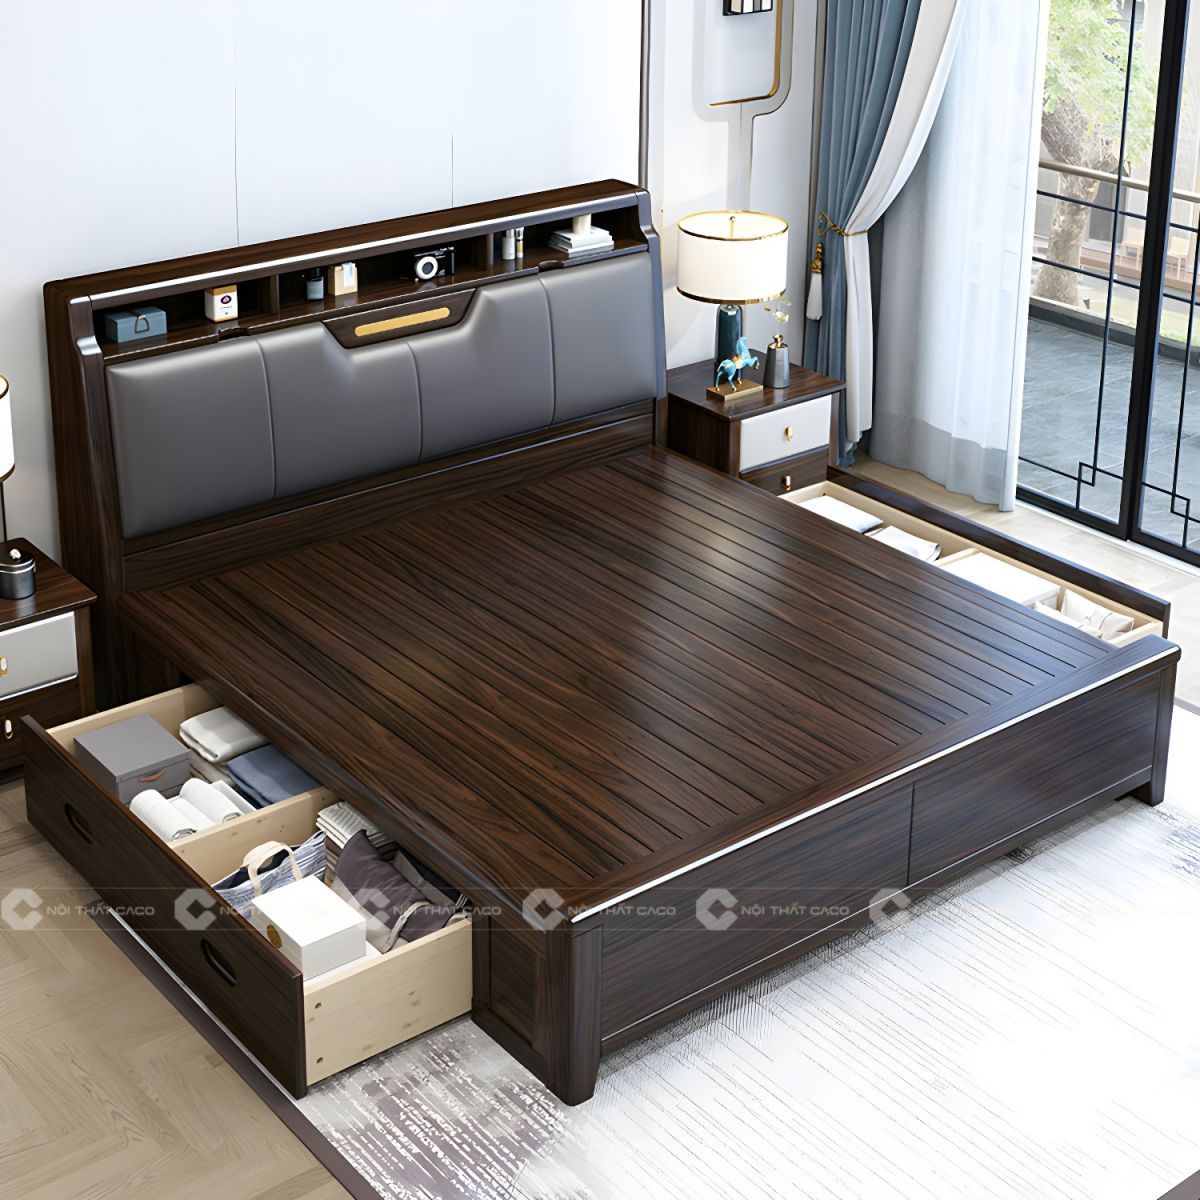 Giường ngủ gỗ tự nhiên có hộc kéo đa năng